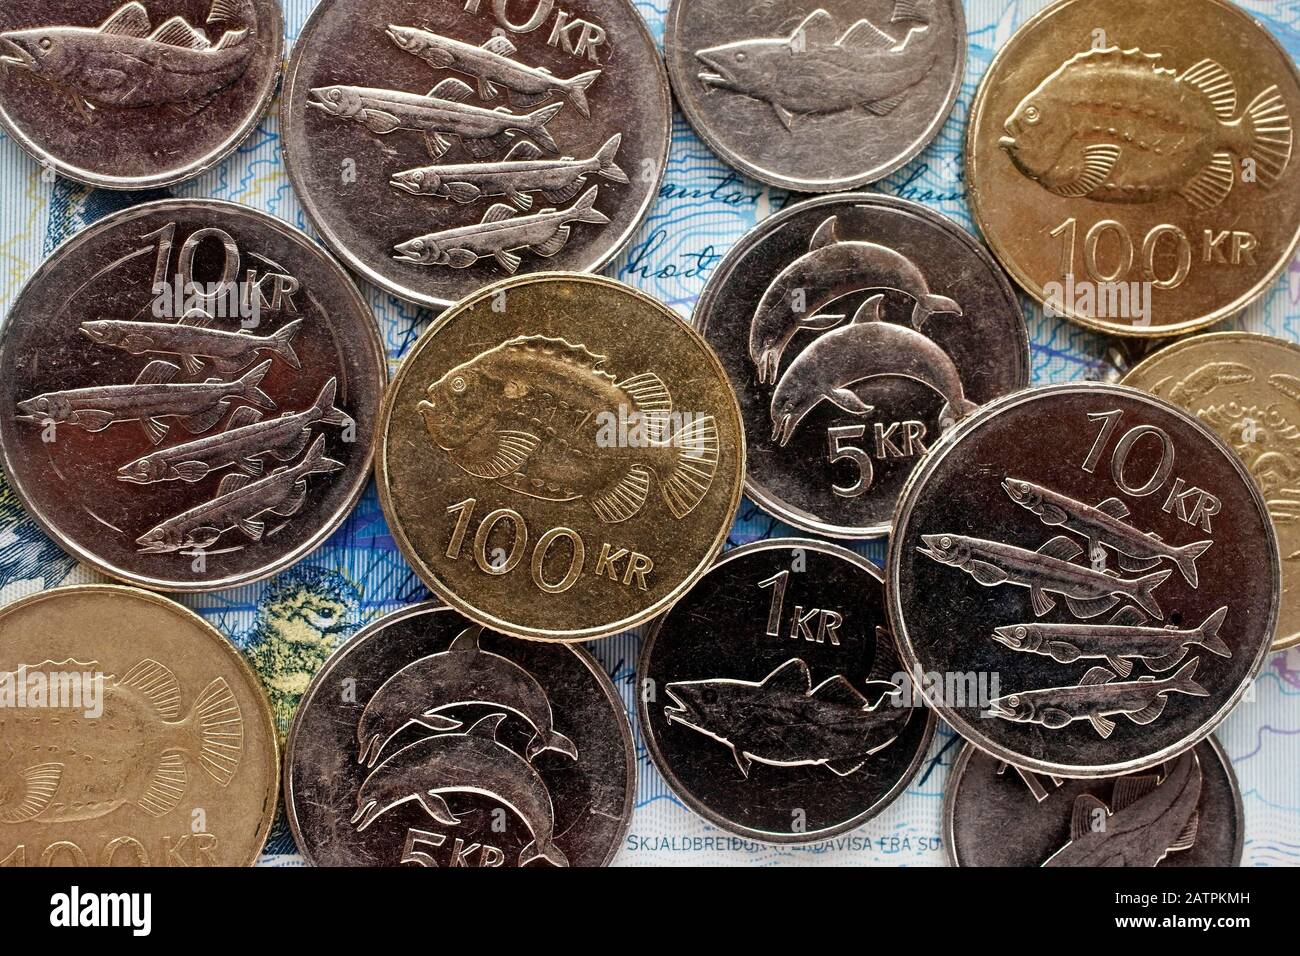 Couronne islandaise, monnaie, pièces de monnaie avec les poissons et les animaux de la mer, de l'Islande Banque D'Images